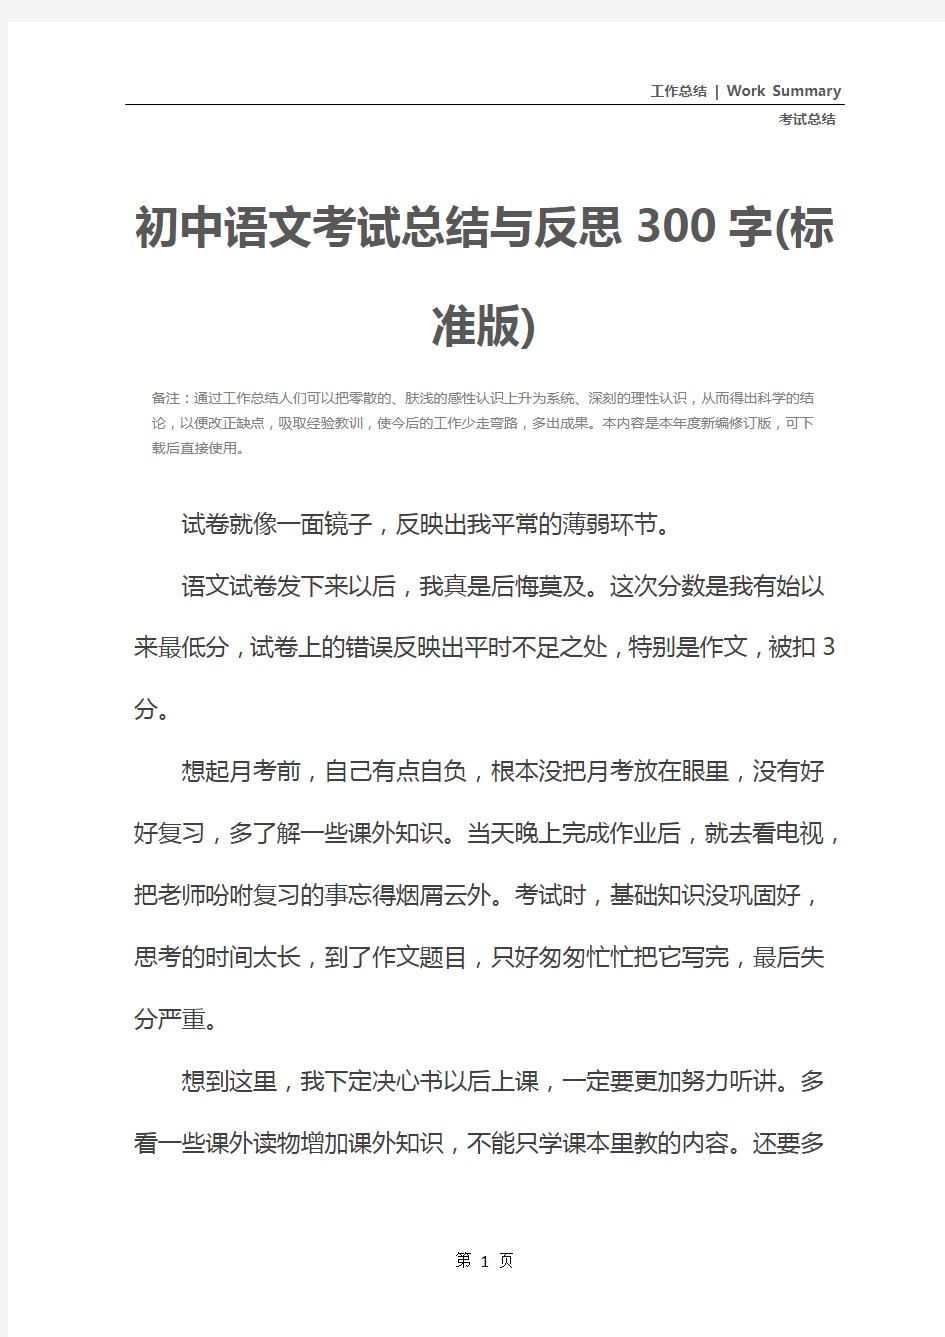 初中语文考试总结与反思300字(标准版)